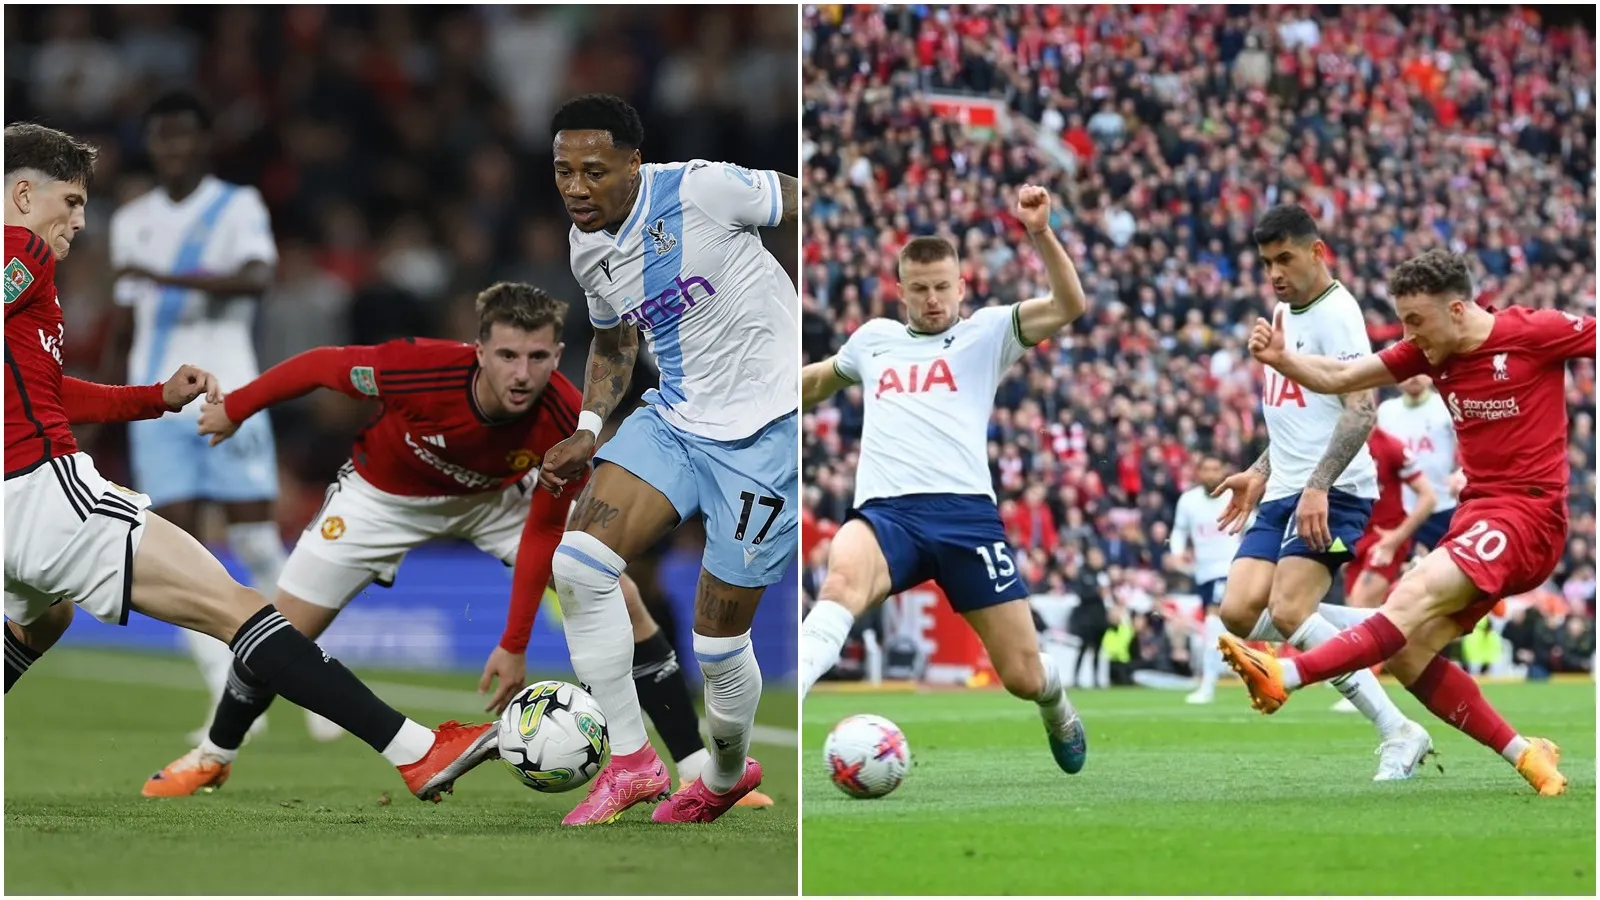 Lịch thi đấu bóng đá tuần này (25/9 - 1/10): MU vs Crystal Palace | Tottenham vs Liverpool